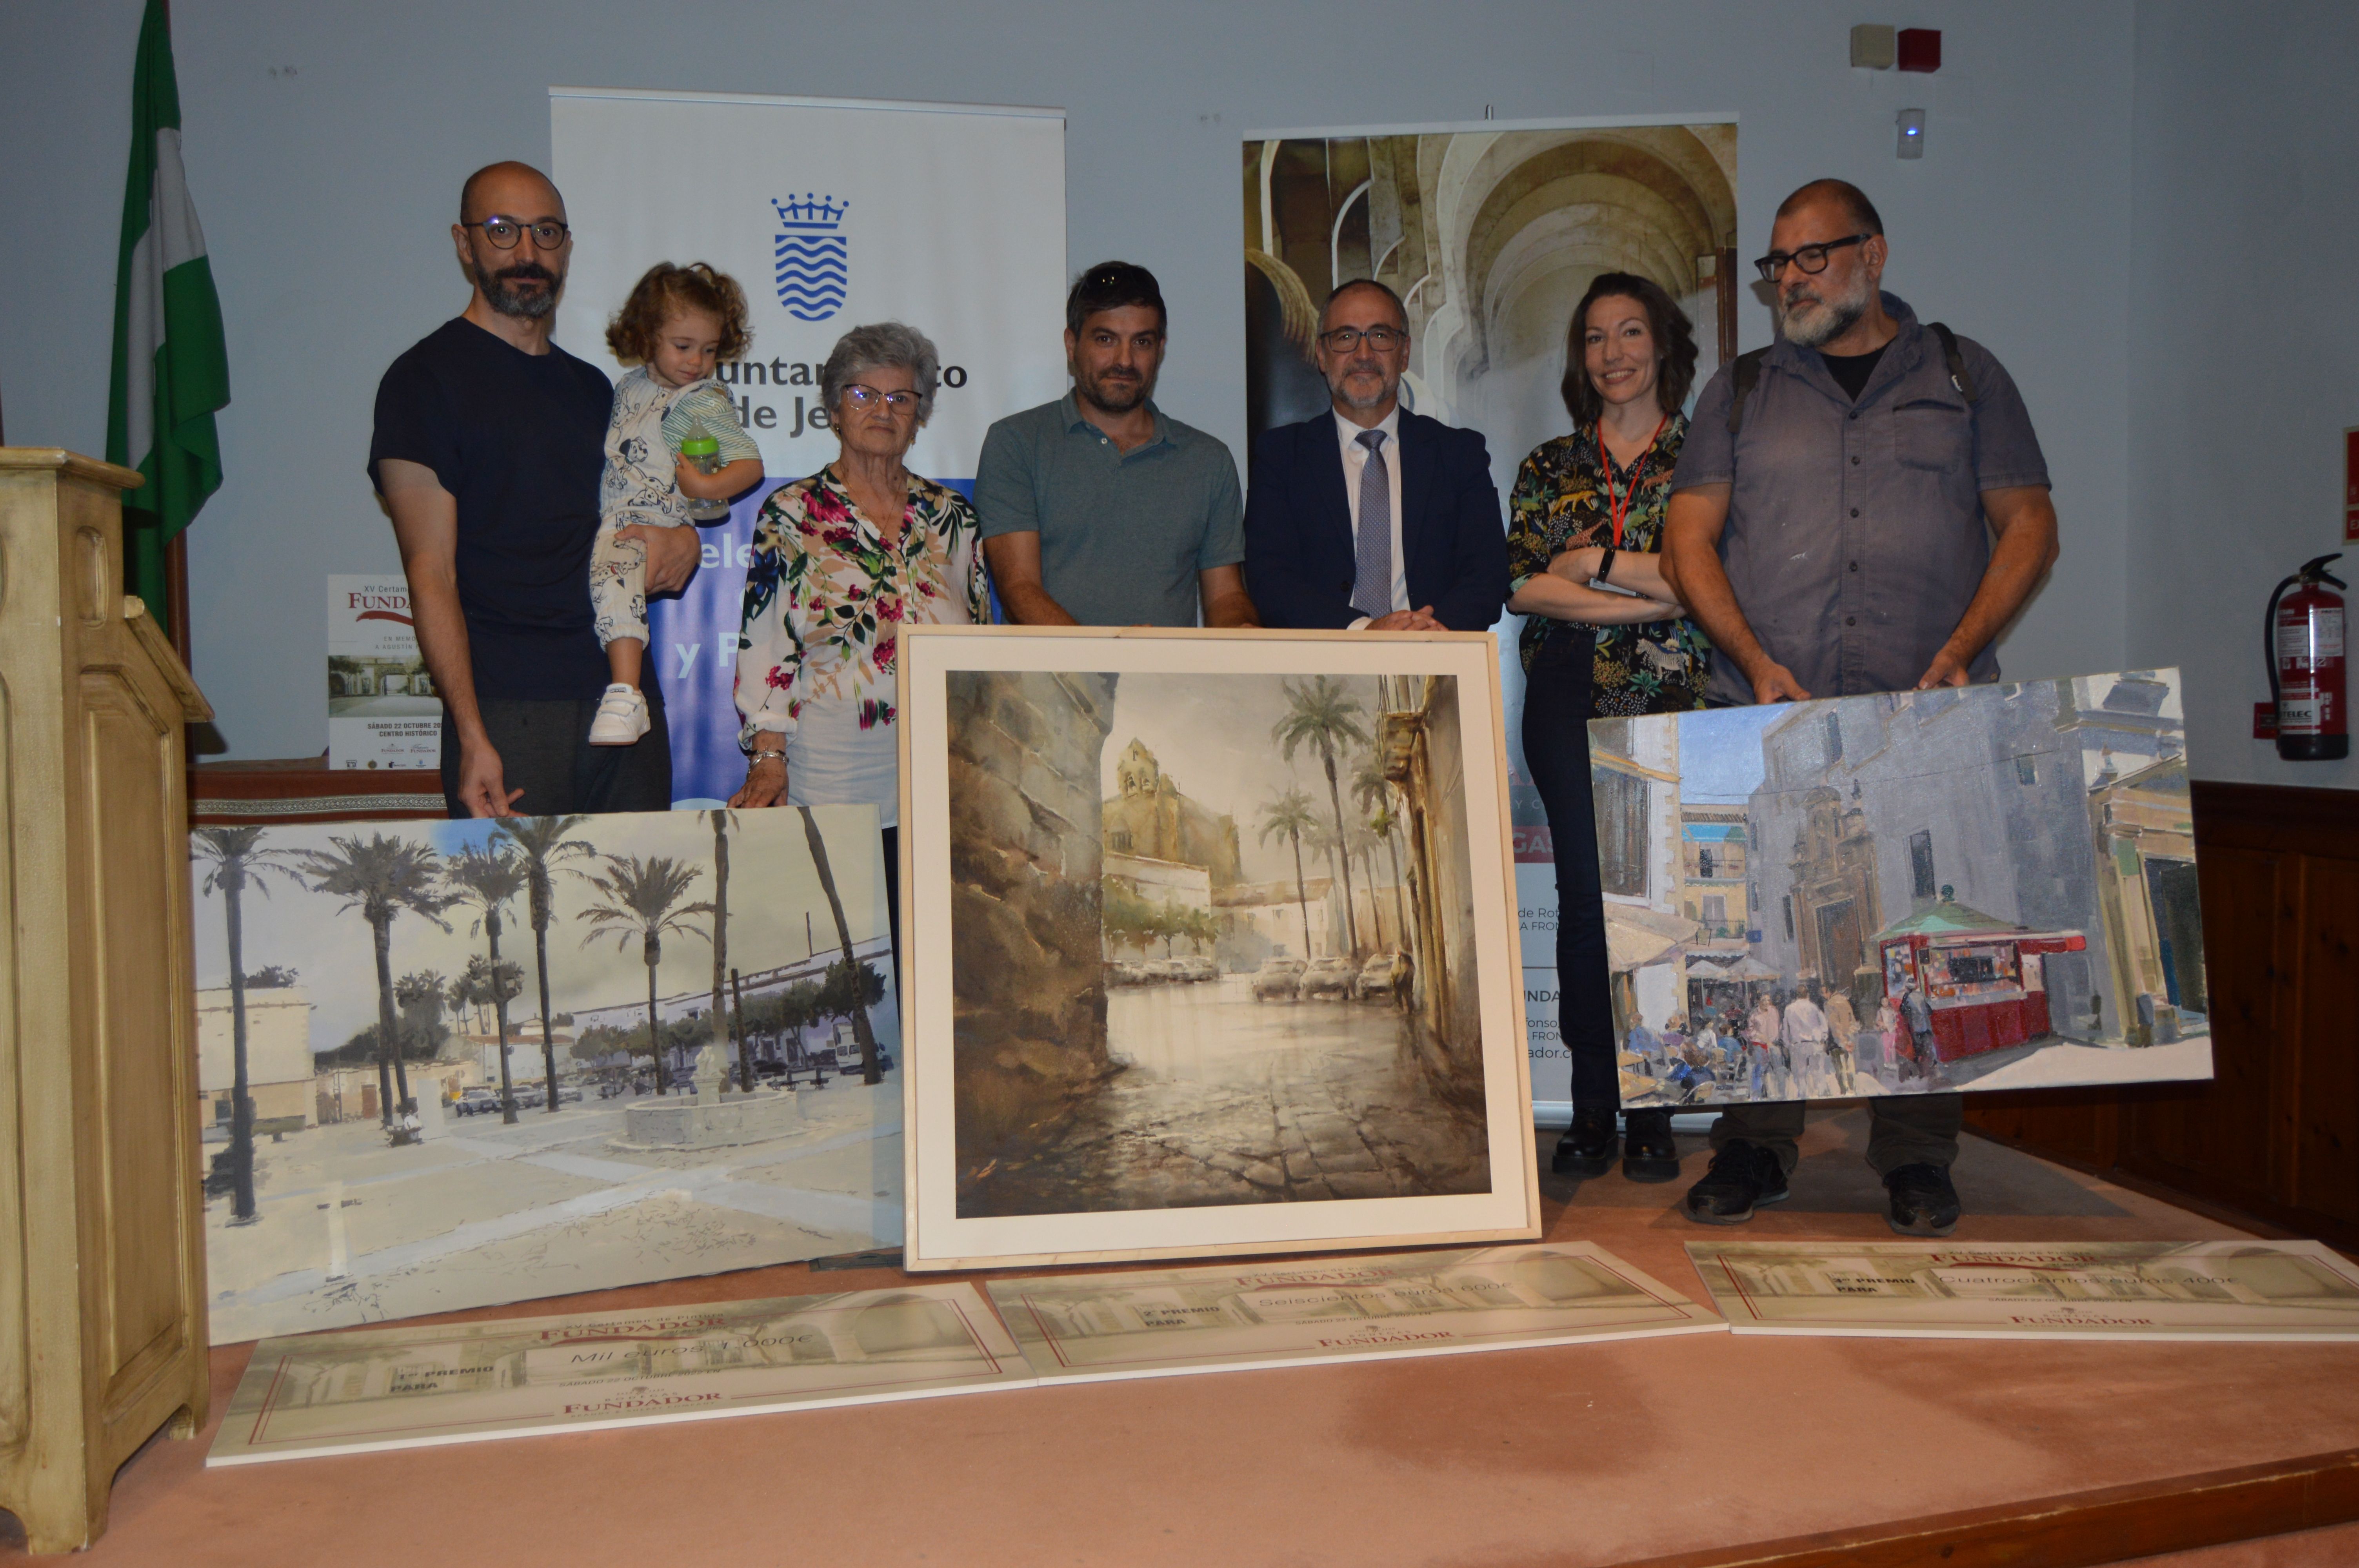 Imagen de los artistas premiados en el XV certamen de pintura al aire libre celebrado en Jerez.